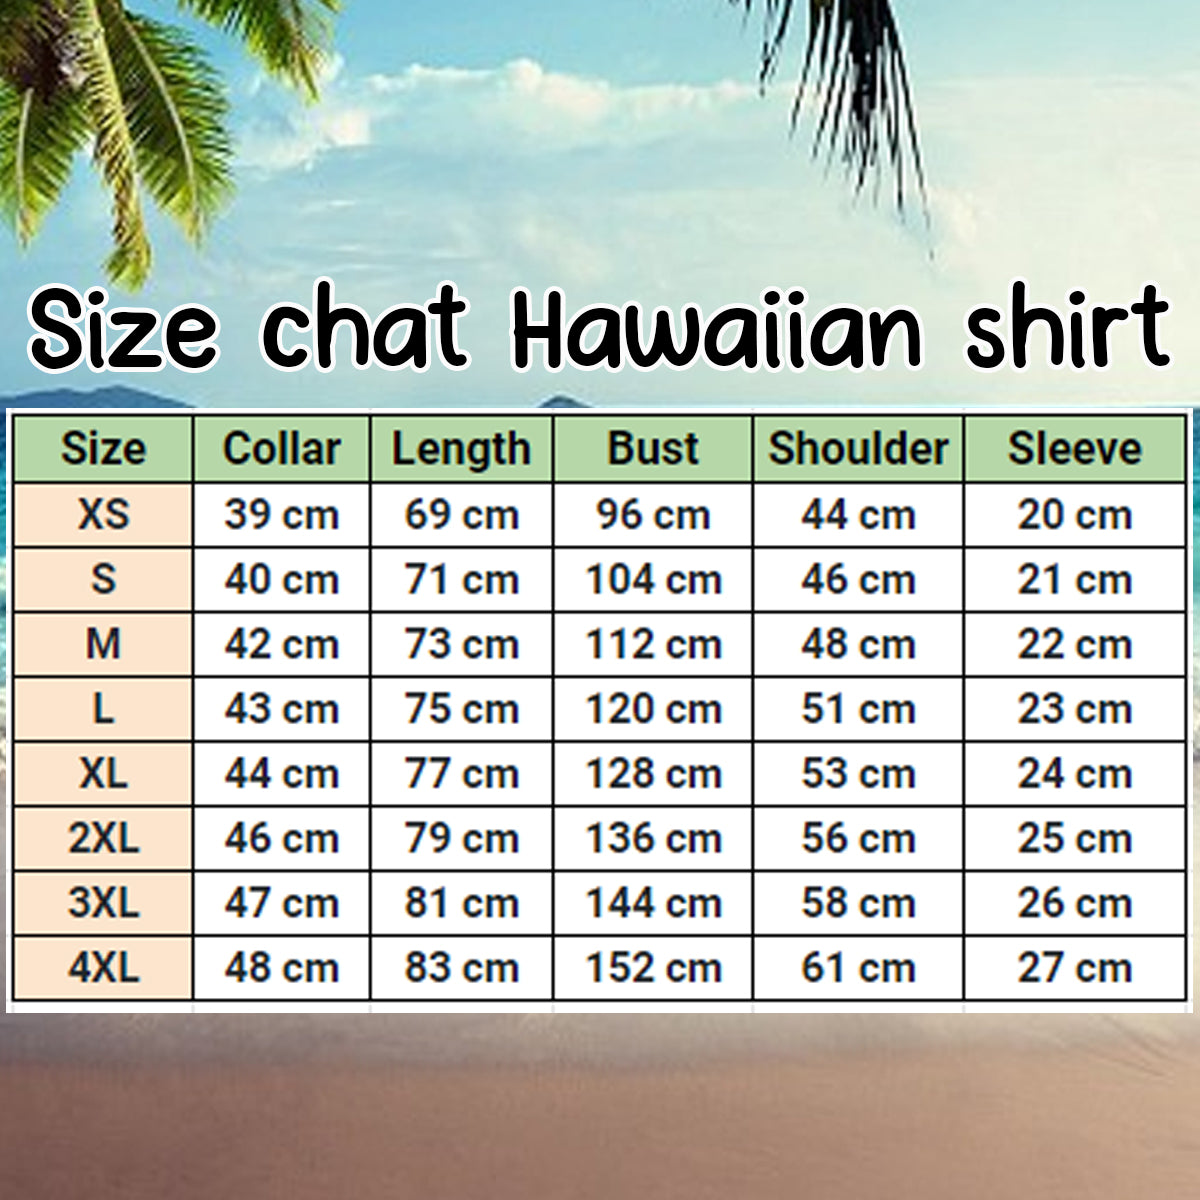 Nubian Goat Lovers Hawaiian Shirt/ Hawaiian shirt vintage flower/ Short Sleeve Hawaiian Aloha Shirt for men/ Women